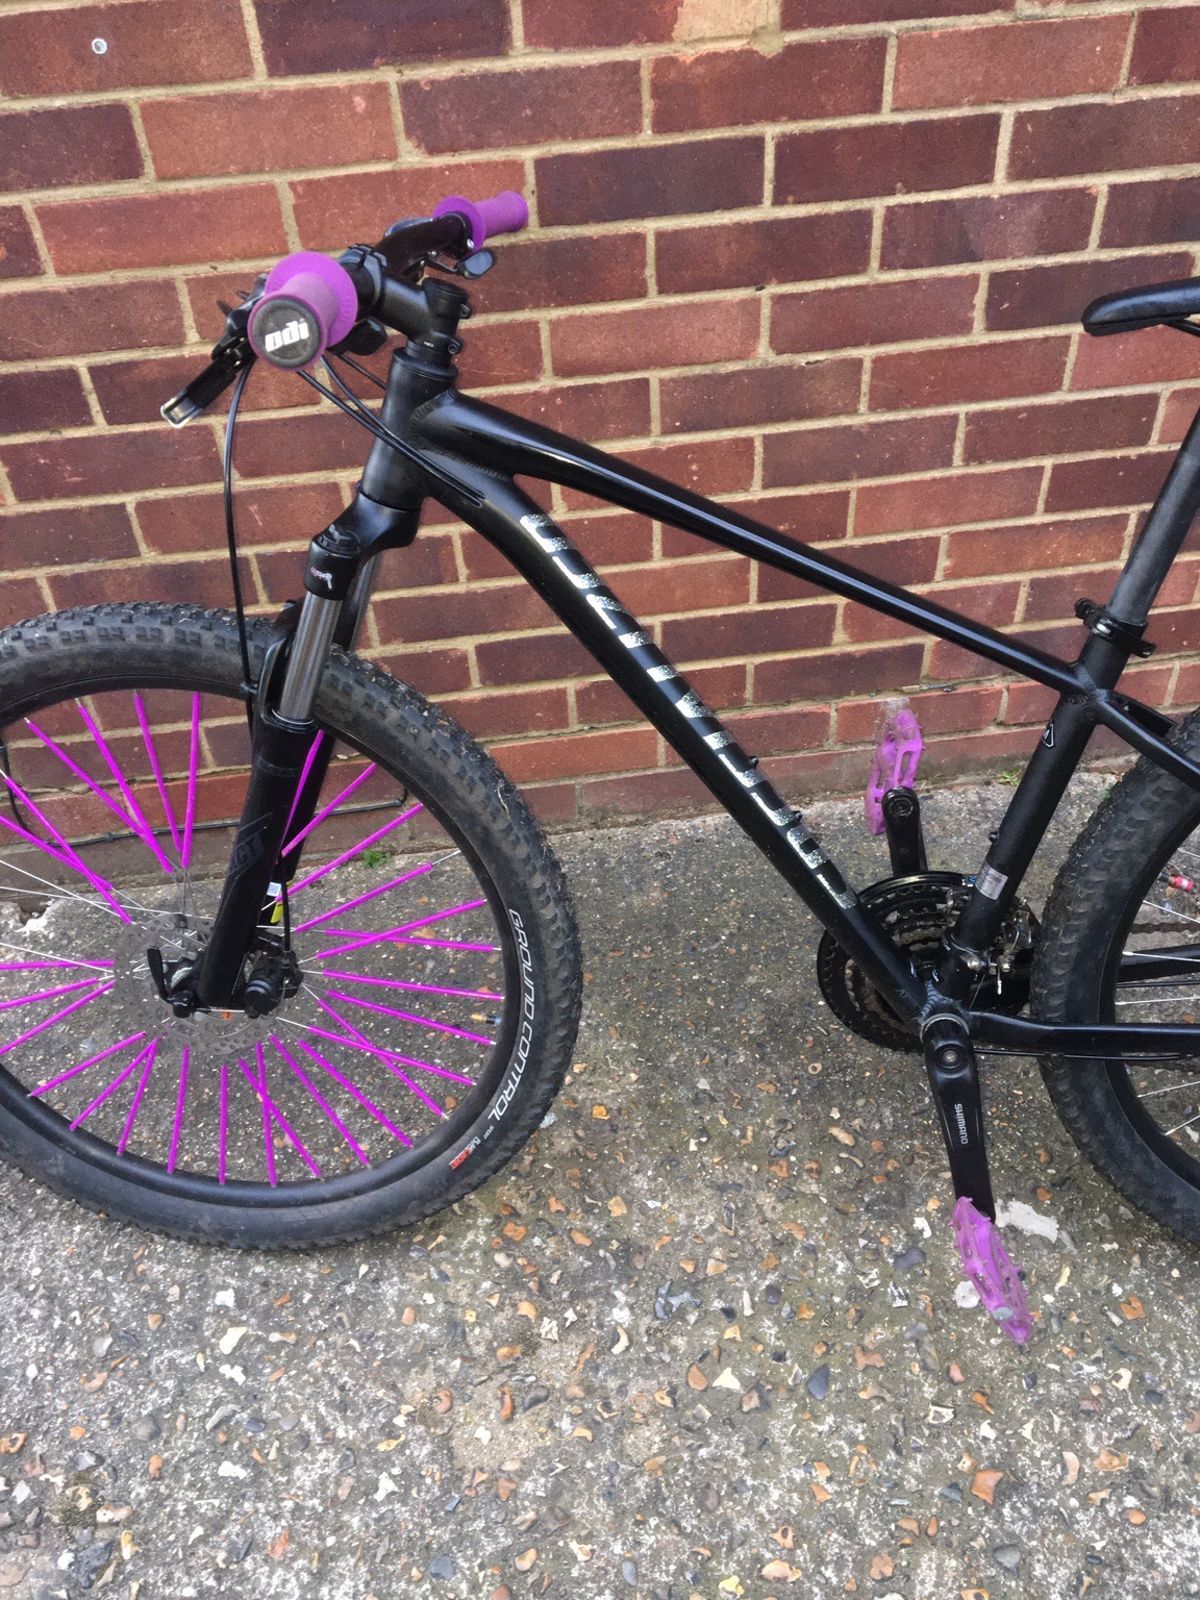 Purple bike components